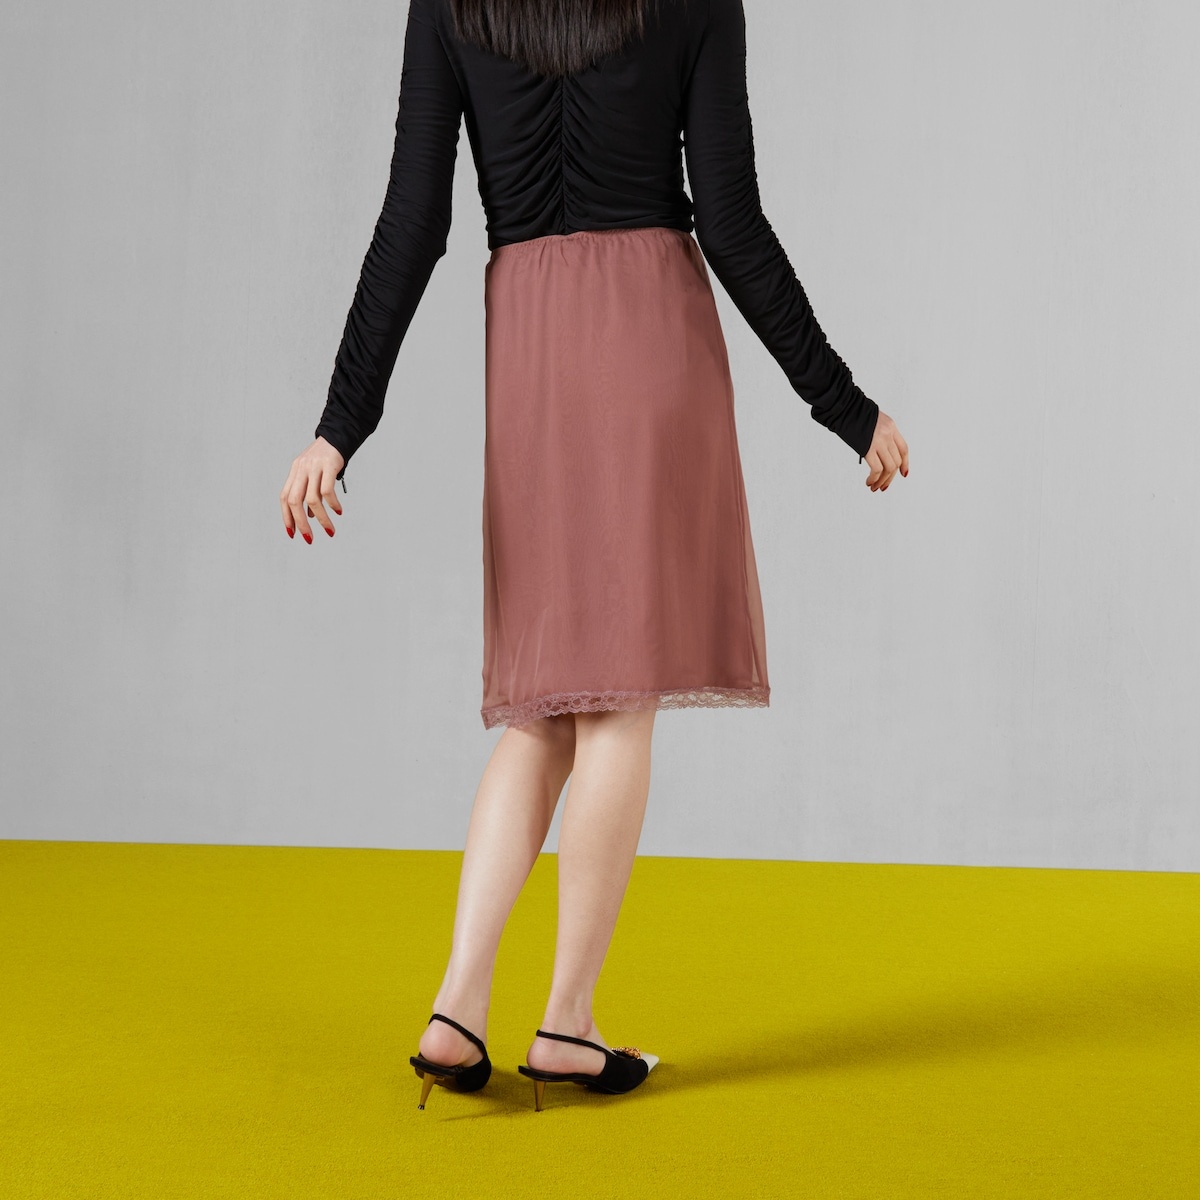 Silk chiffon skirt with lace trim - 6